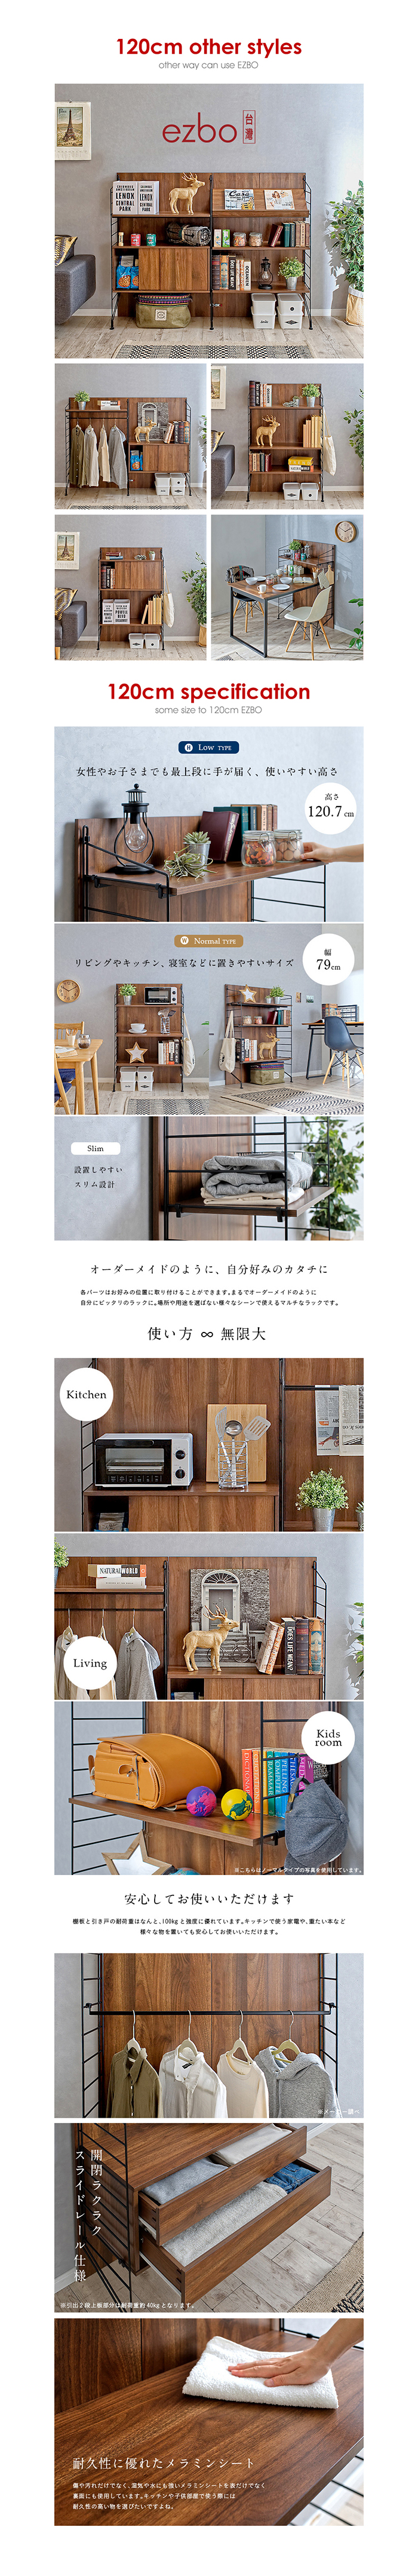 【機能組裝傢俱】ezbo卡爾頓系列/萬用款層架置物架120cm(DIY自行組裝)/H&D東稻家居